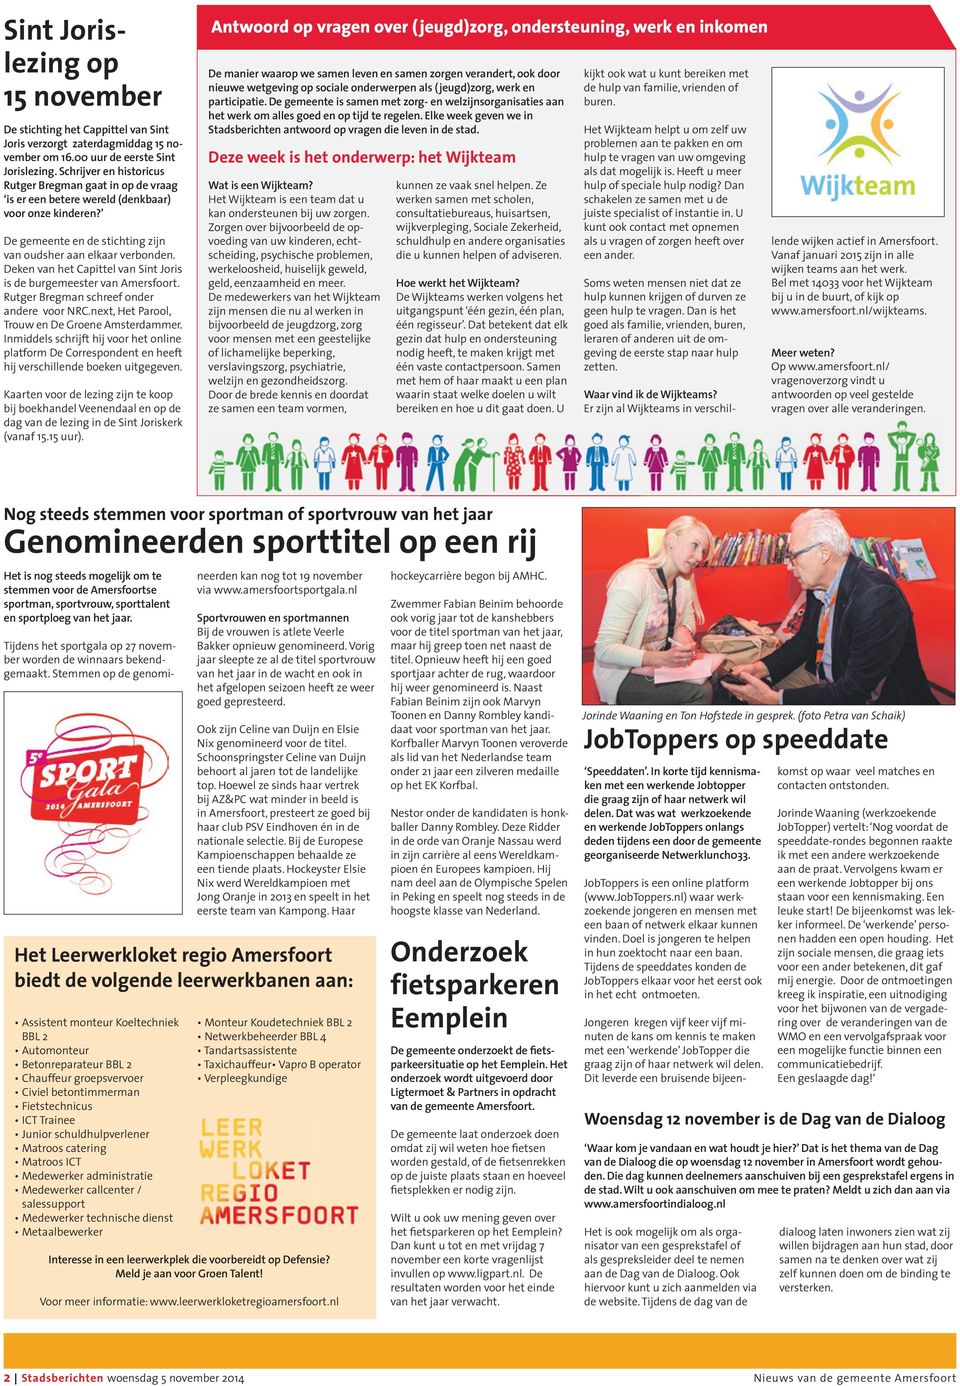 Deken van het Capittel van Sint Joris is de burgemeester van Amersfoort. Rutger Bregman schreef onder andere voor NRC.next, Het Parool, Trouw en De Groene Amsterdammer.